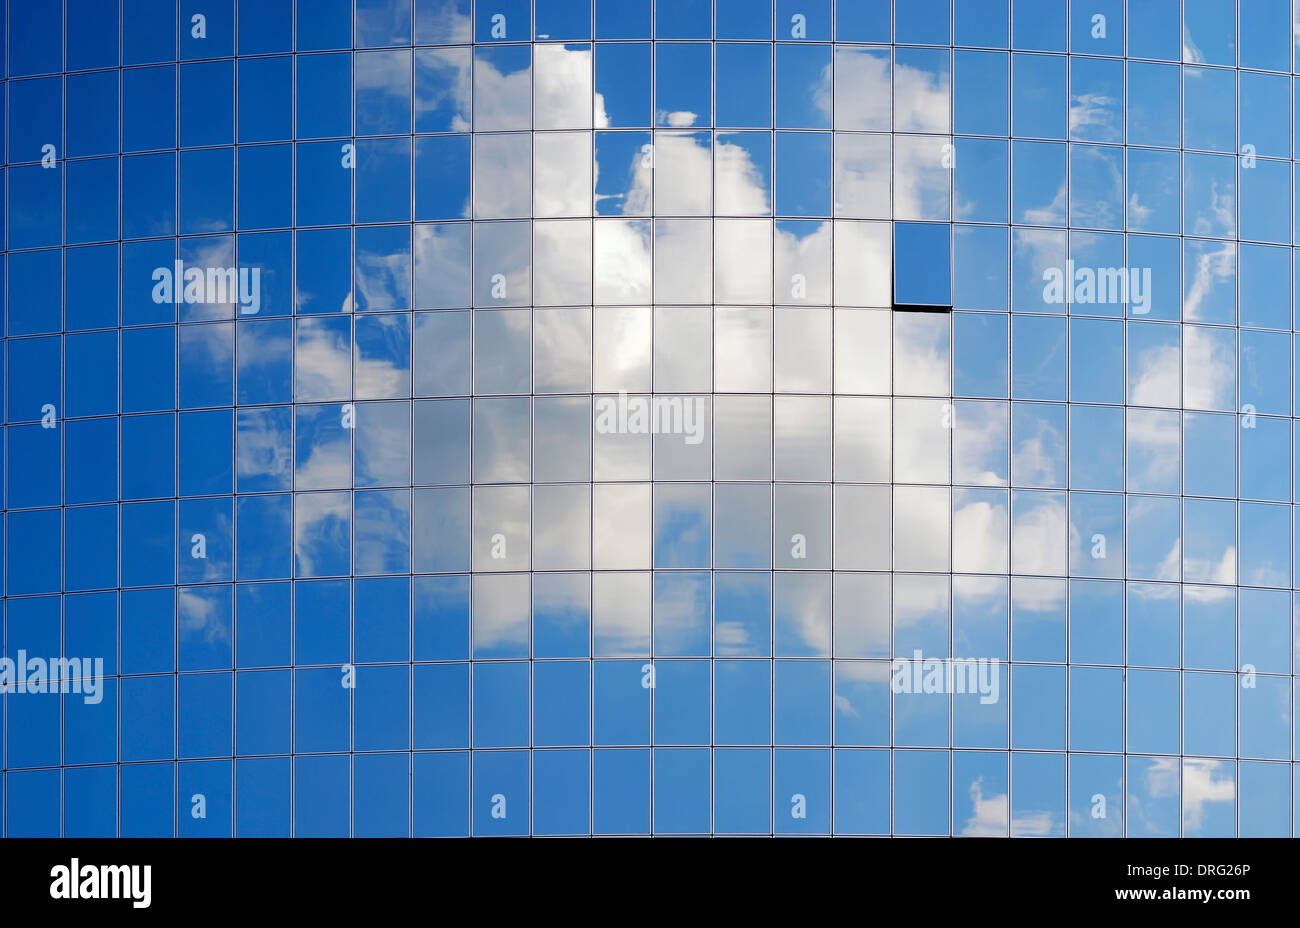 La superficie a specchio di molte parti uguali è che riflette il blu del cielo con una nuvola bianca, una finestra è semi-aperto. Foto Stock